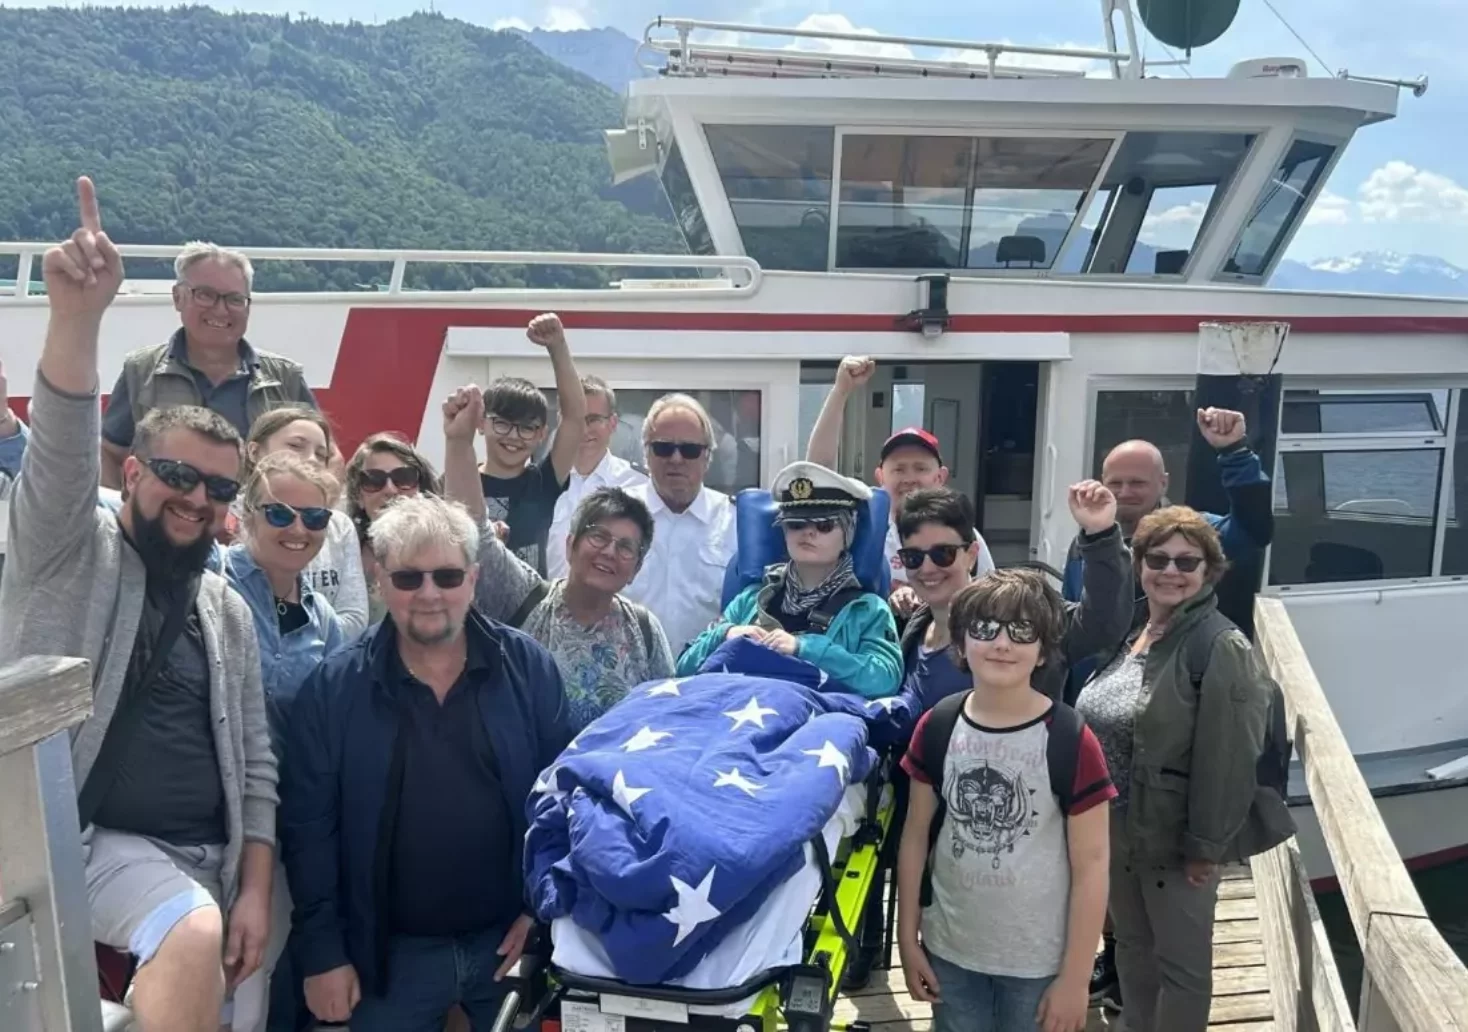 Foto in Beitrag von 5min.at: Zu sehen ist die gesamte Familie und die Freunde von Lisa vor einem Schiff am Traunsee in Oberösterreich.